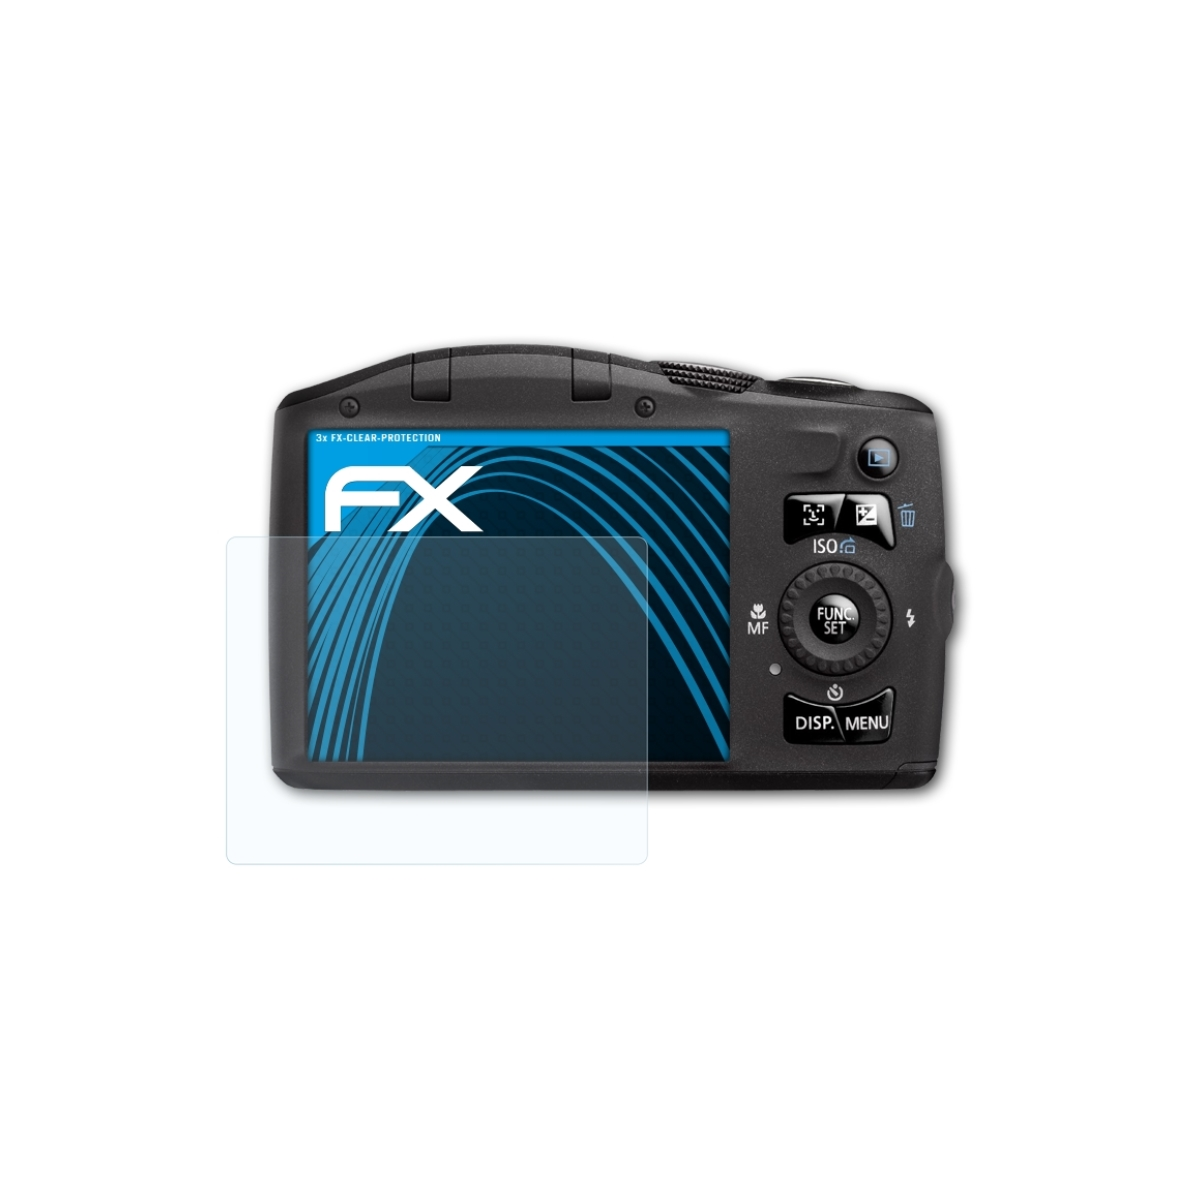 IS) SX130 3x FX-Clear PowerShot ATFOLIX Displayschutz(für Canon